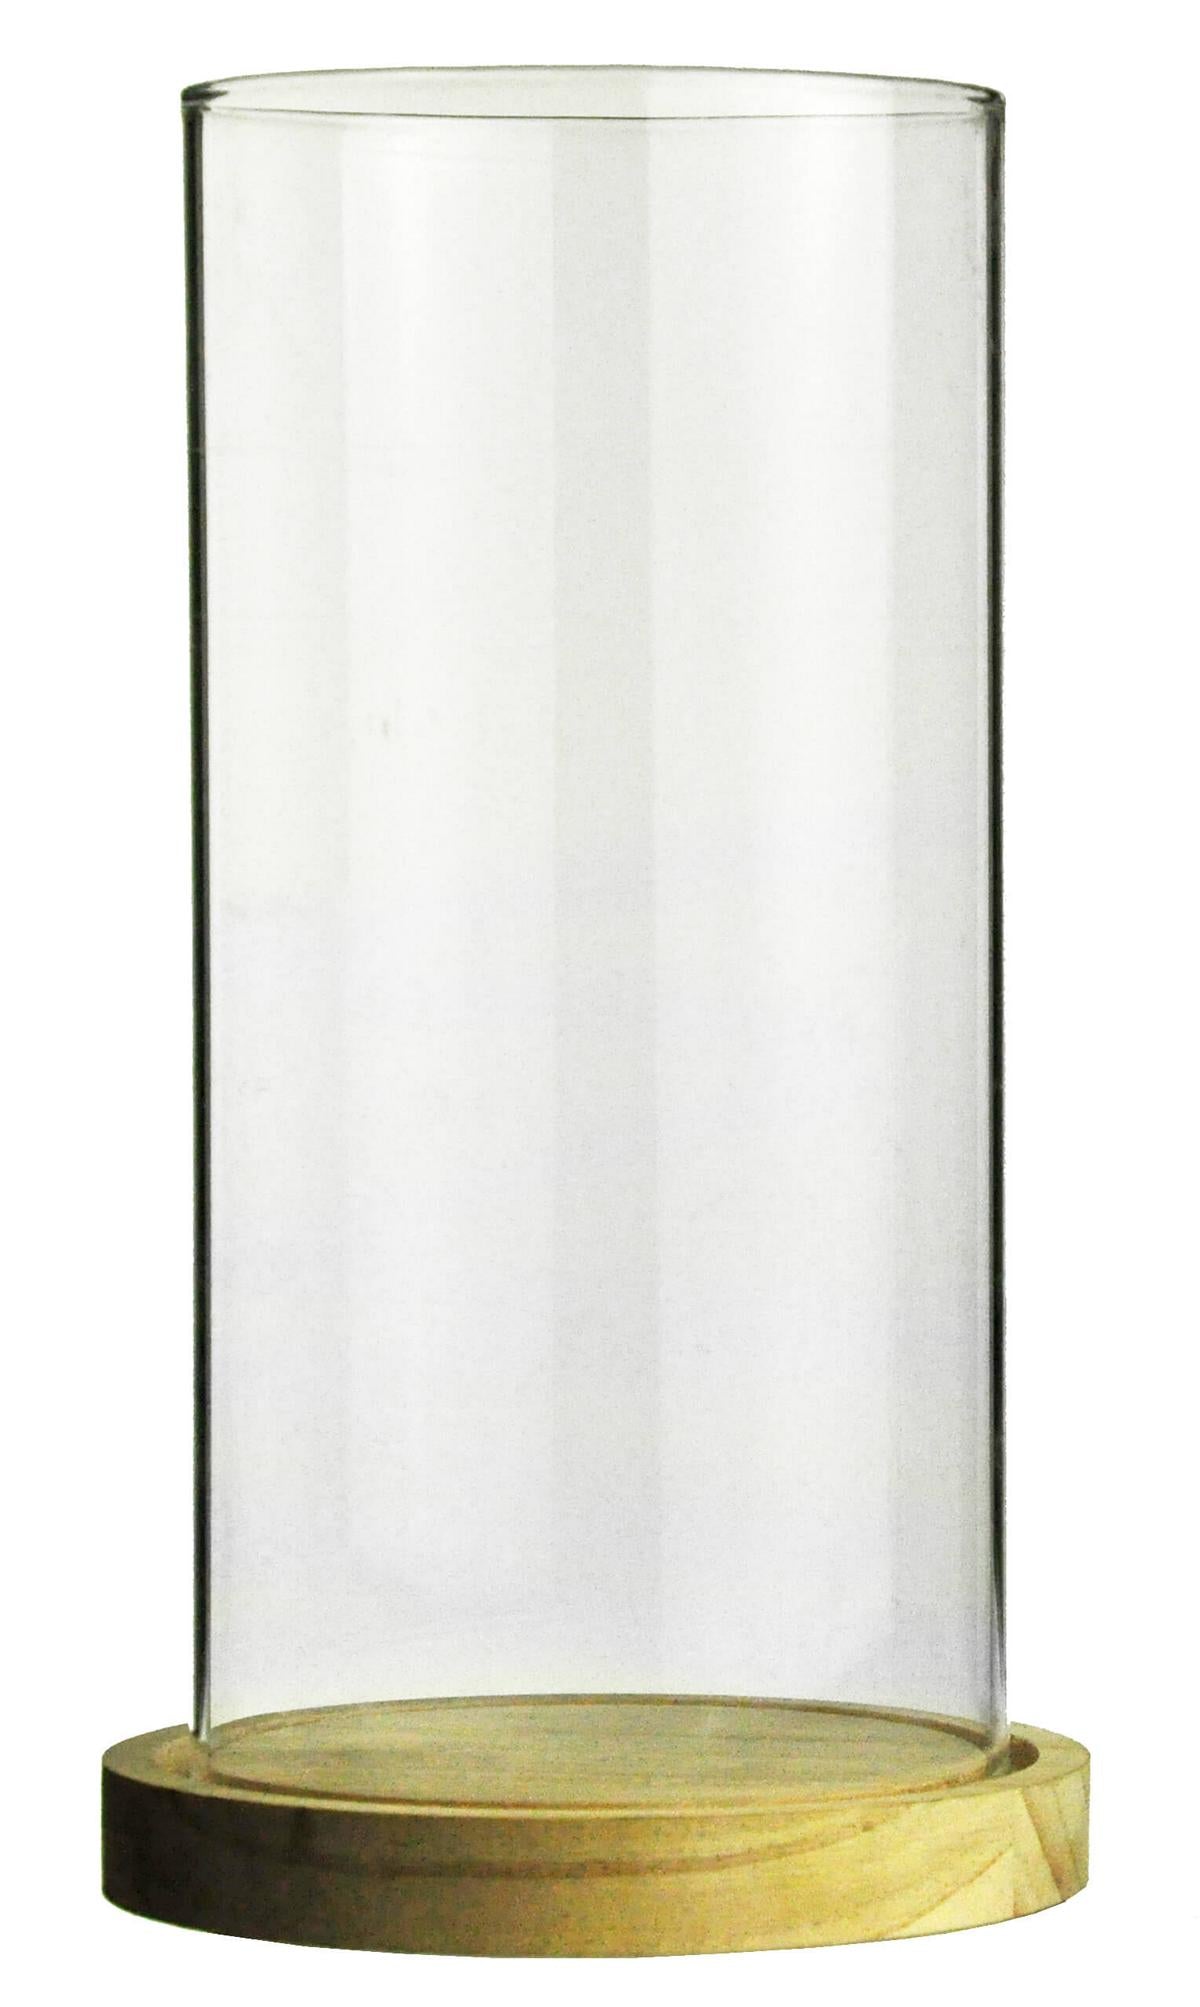 Windlicht Glaszylinder mit Holzteller Kerzenhalter Tischdeko Kerzenständer Laterne